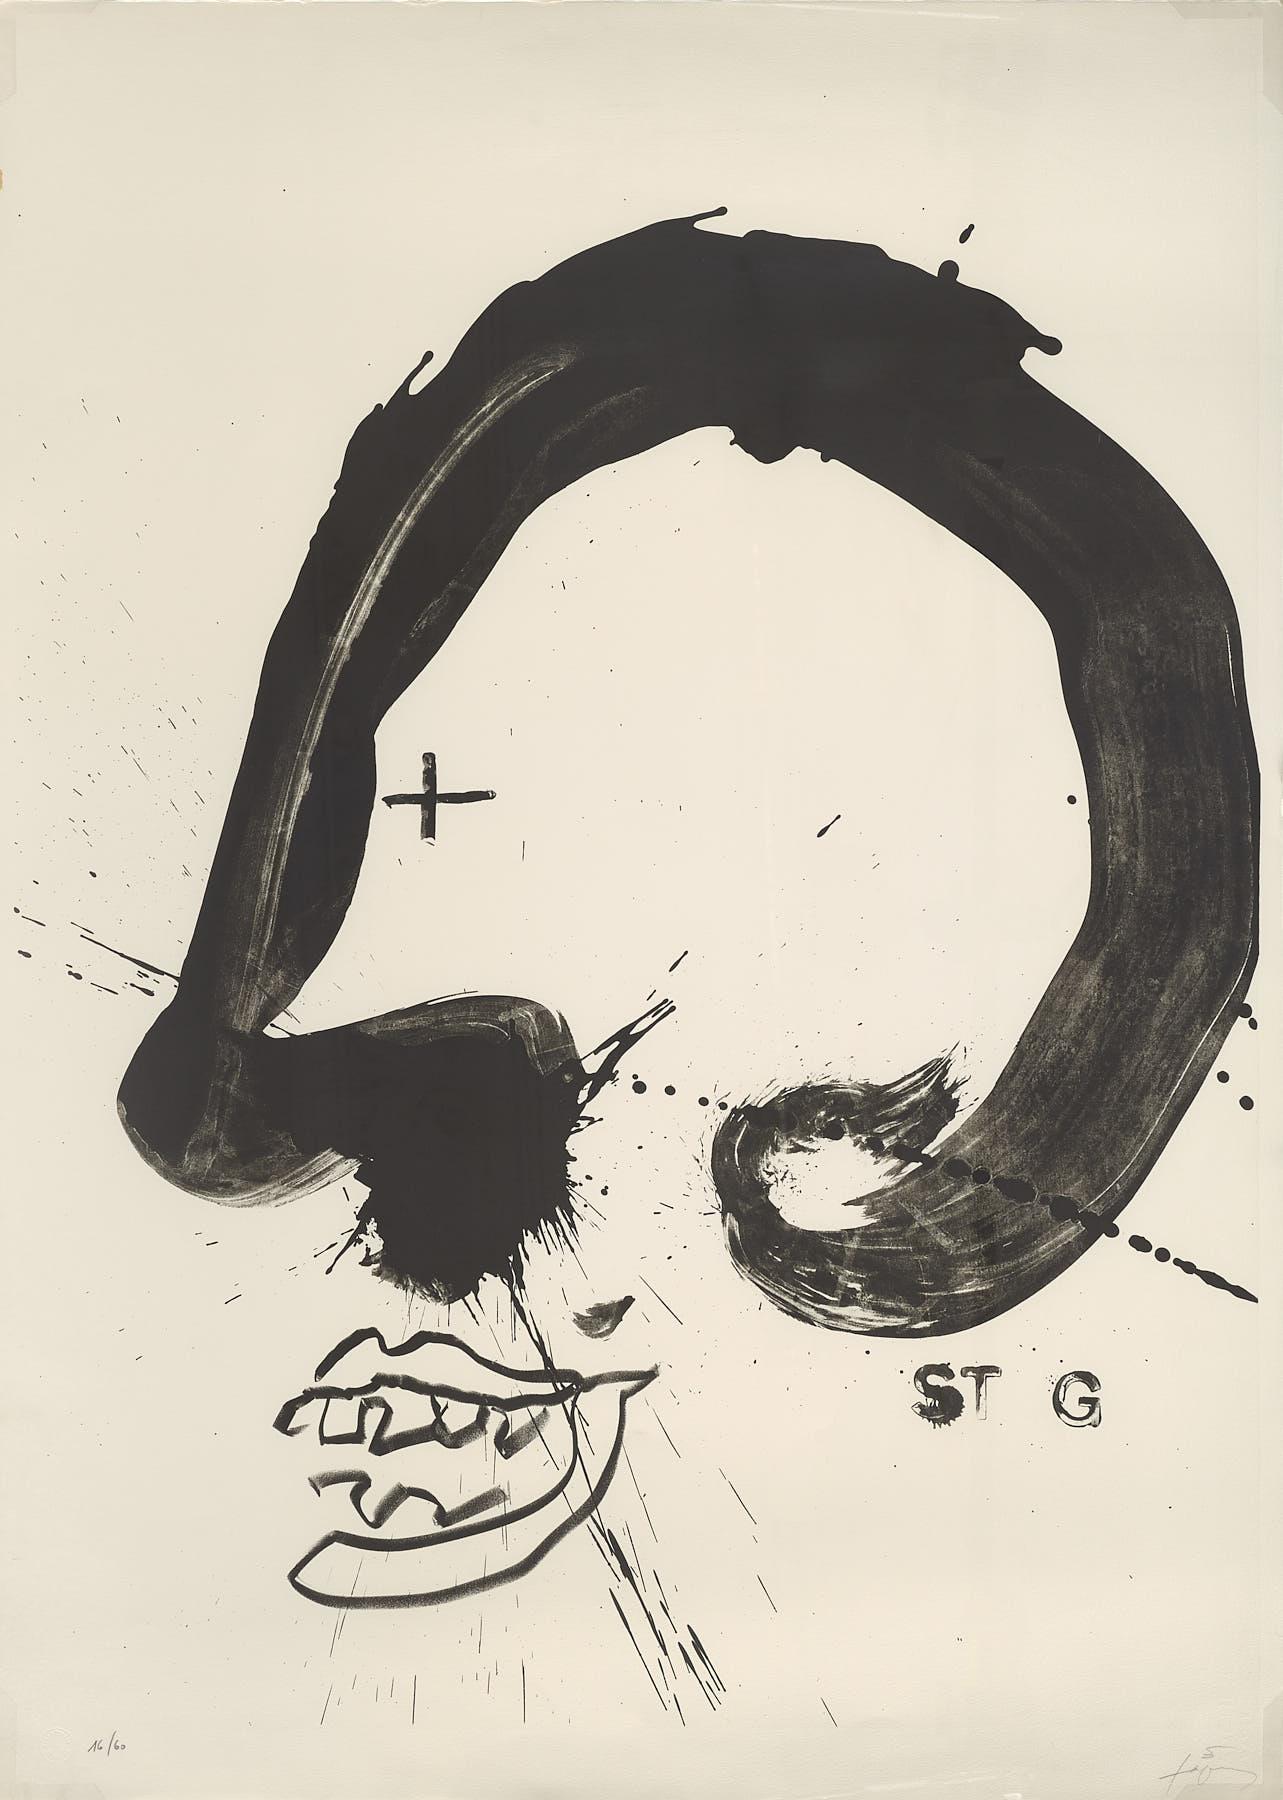 Abstract Print Antoni Tàpies - Lithographie d'artiste espagnol signée, édition limitée, numérotée n24